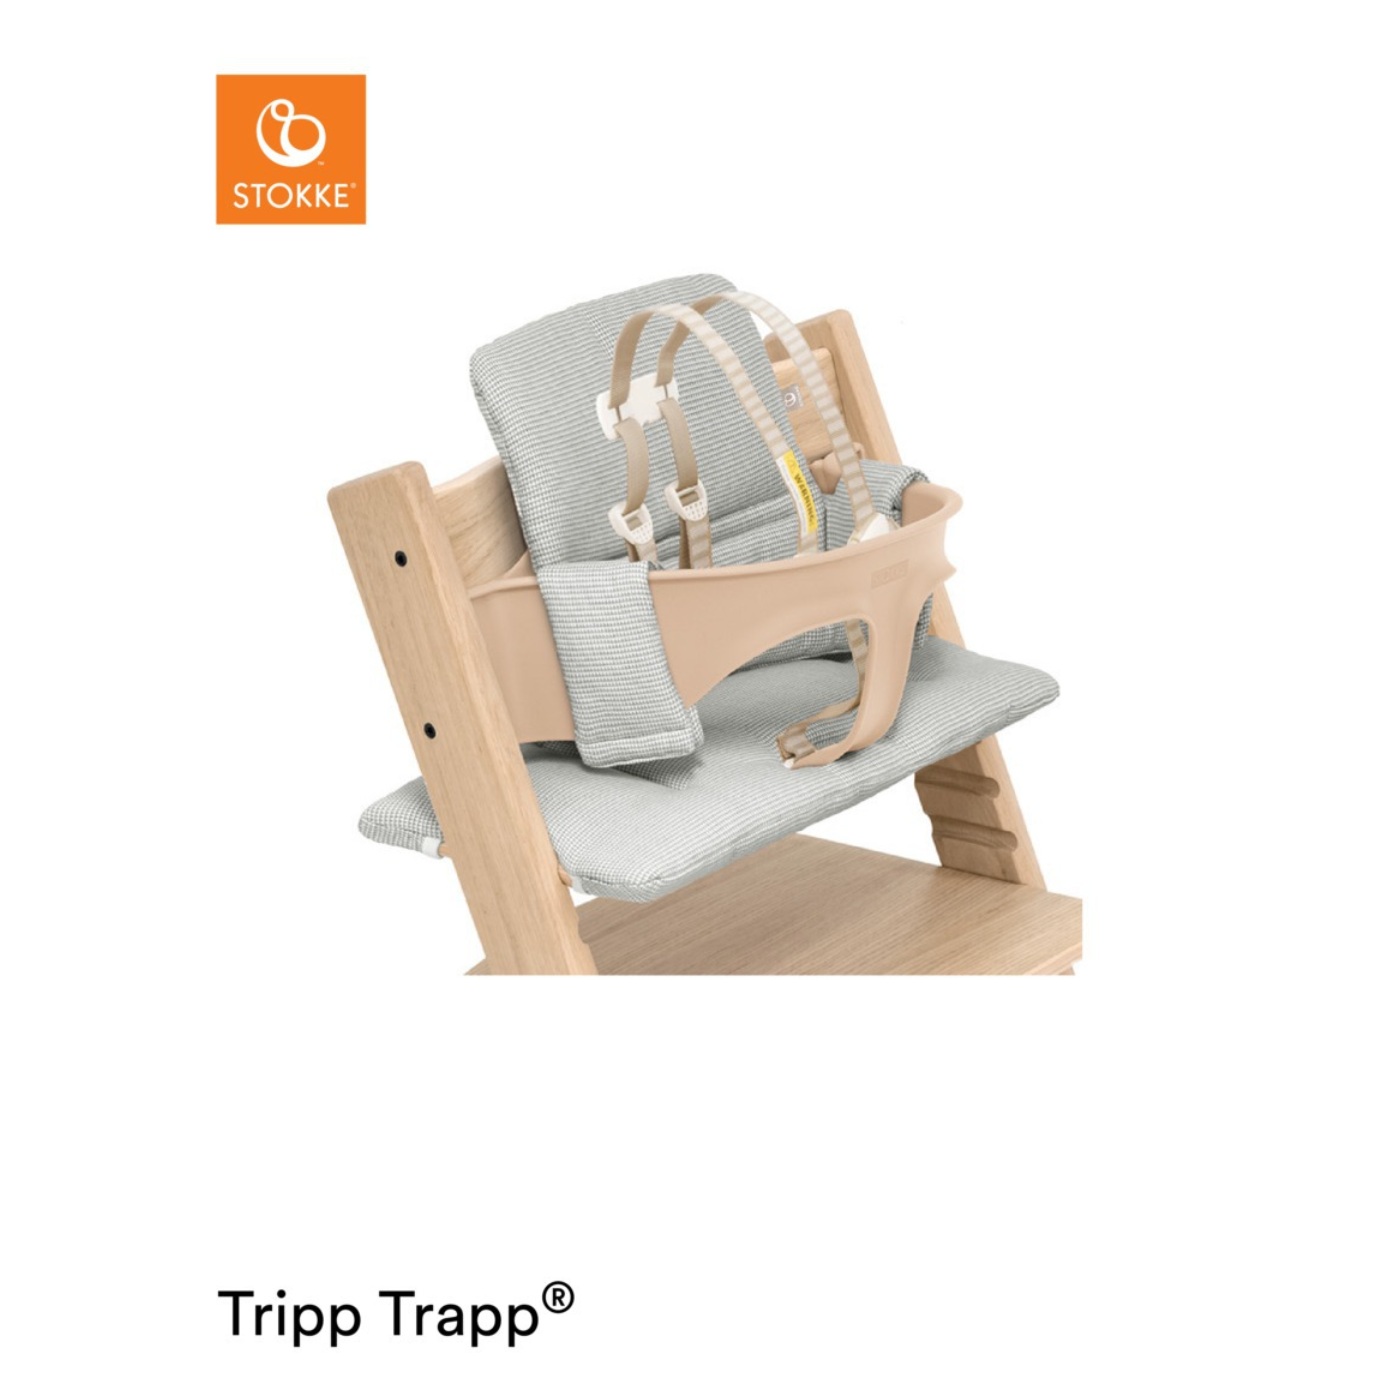 Stokke Tripp Trapp • leverans Bonti